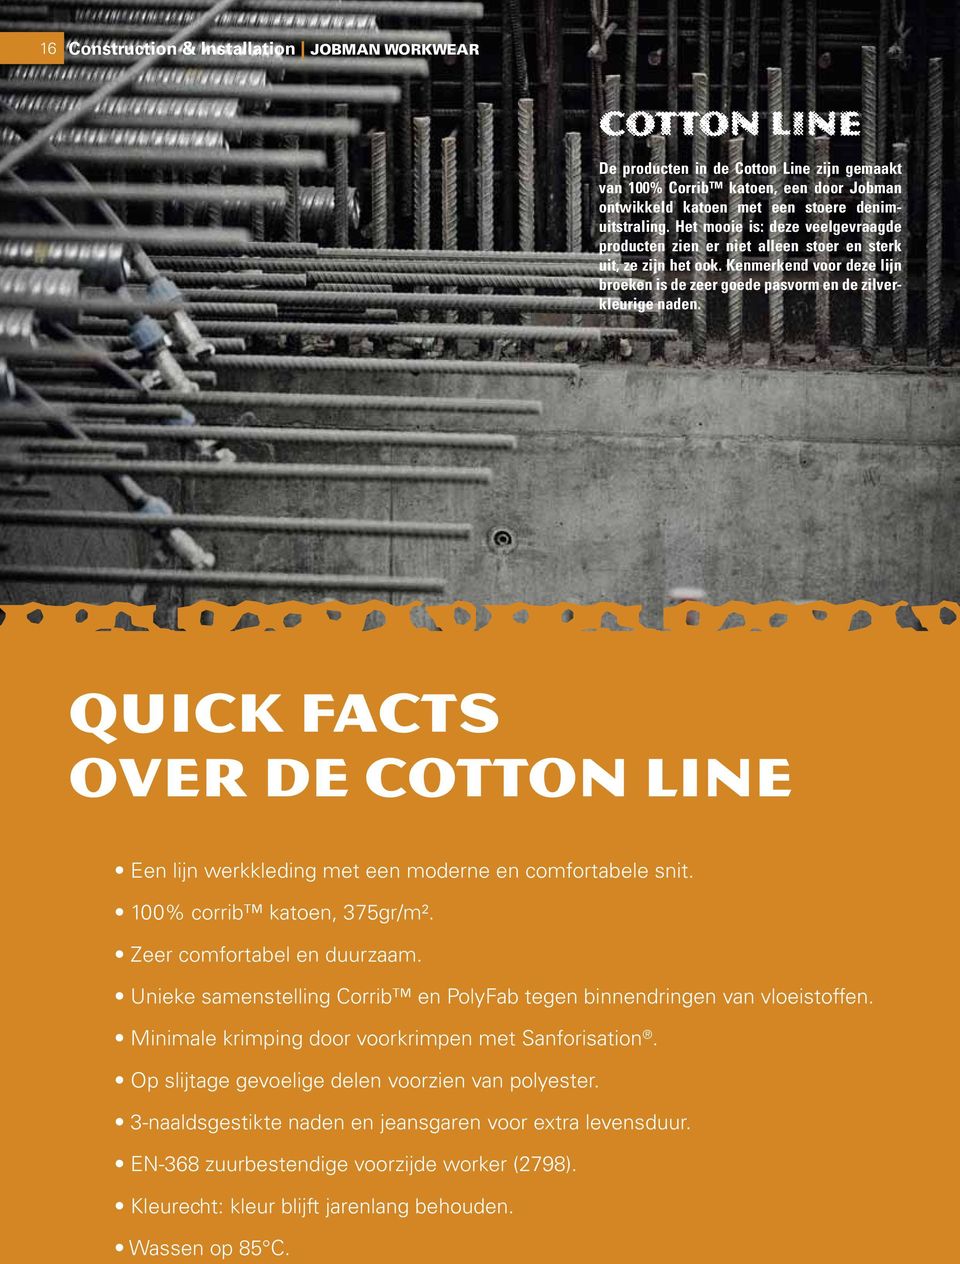 Quick facts over de Cotton line Een lijn werkkleding met een moderne en comfortabele snit. 100% corrib katoen, 375gr/m². Zeer comfortabel en duurzaam.